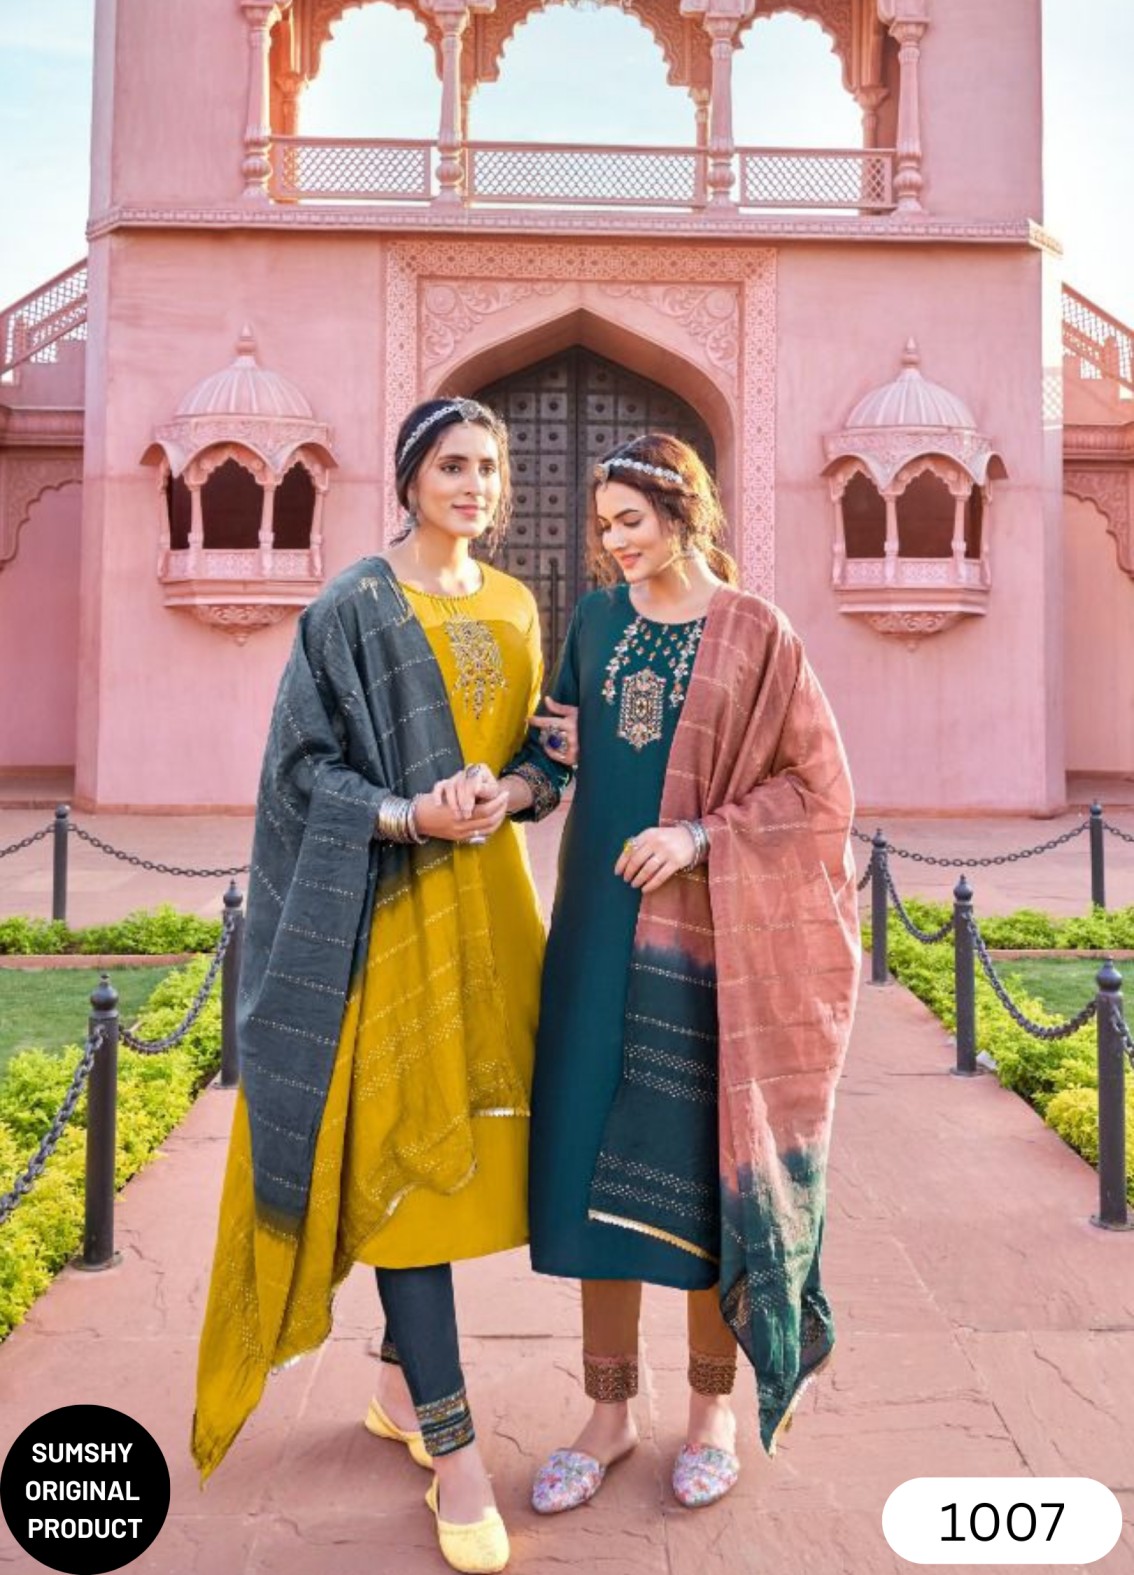 Details more than 130 rajwadi dress ladies